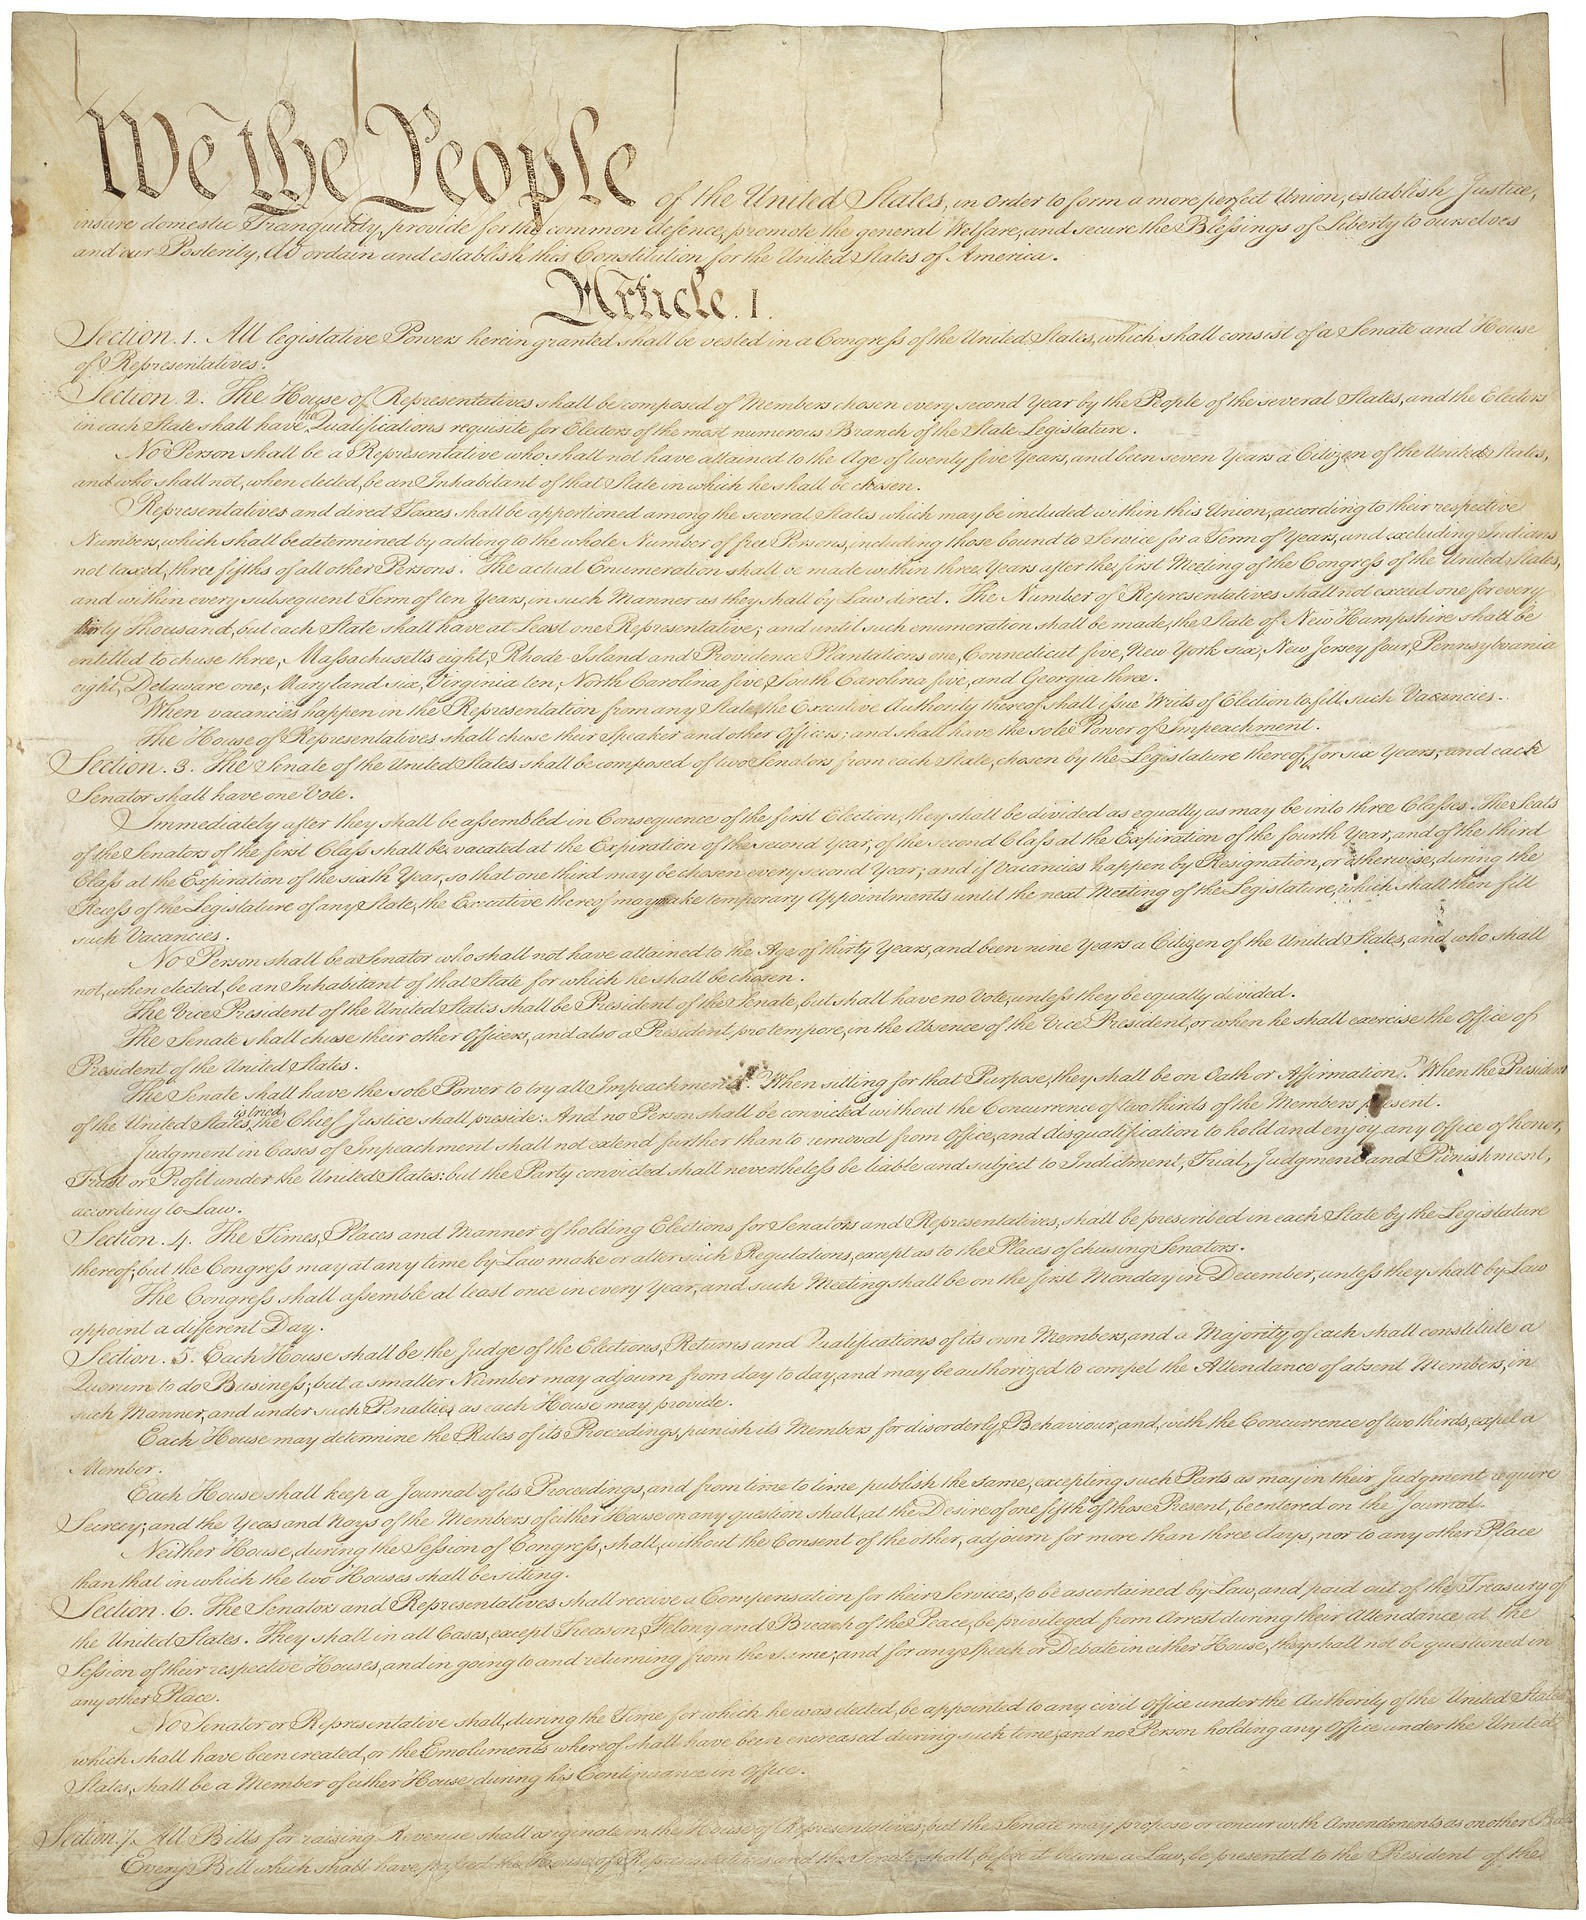 constitucional